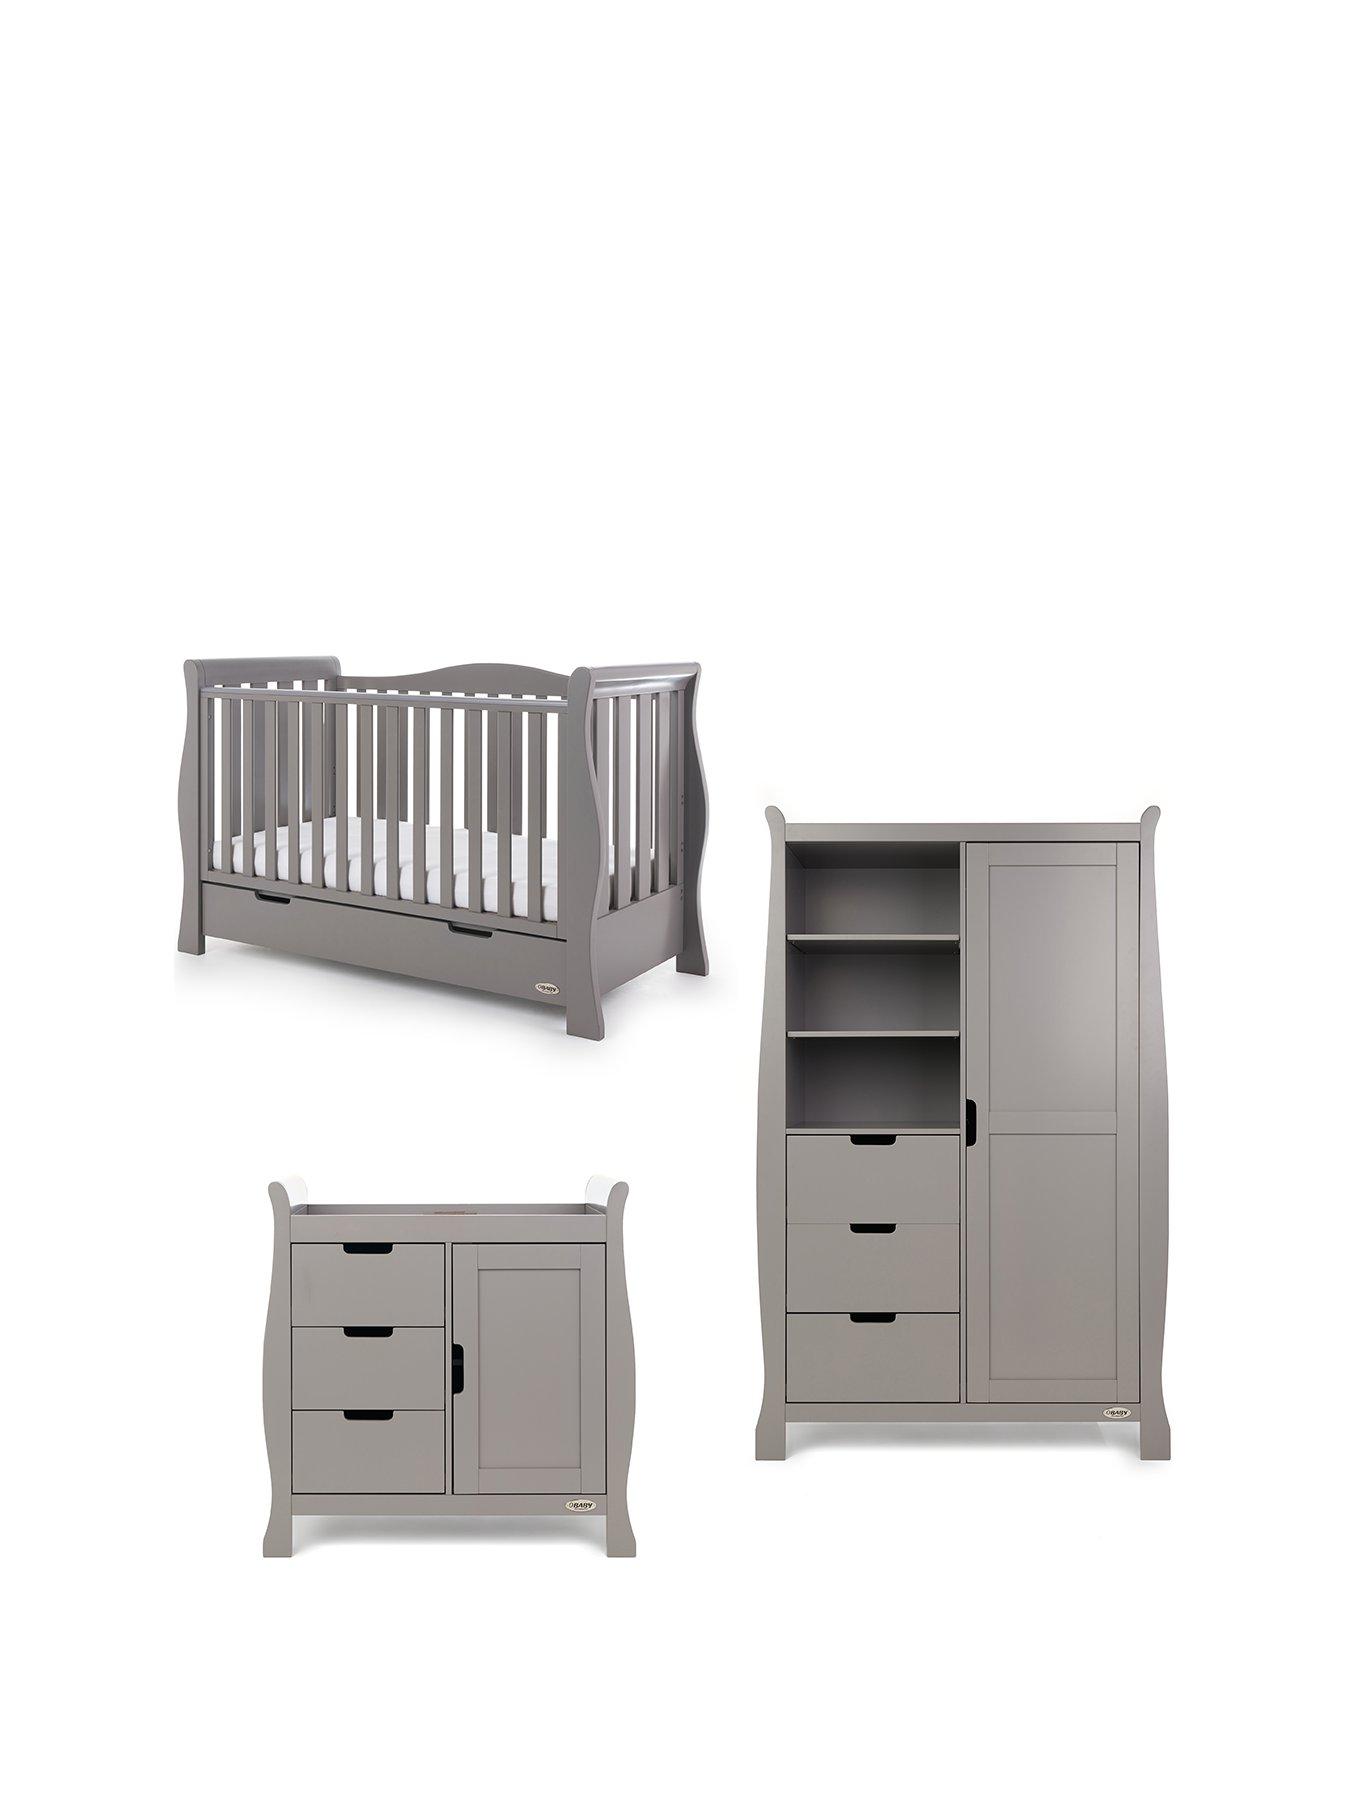 Obaby Stamford Luxe Sleigh 3 Piece Nursery Furniture Set